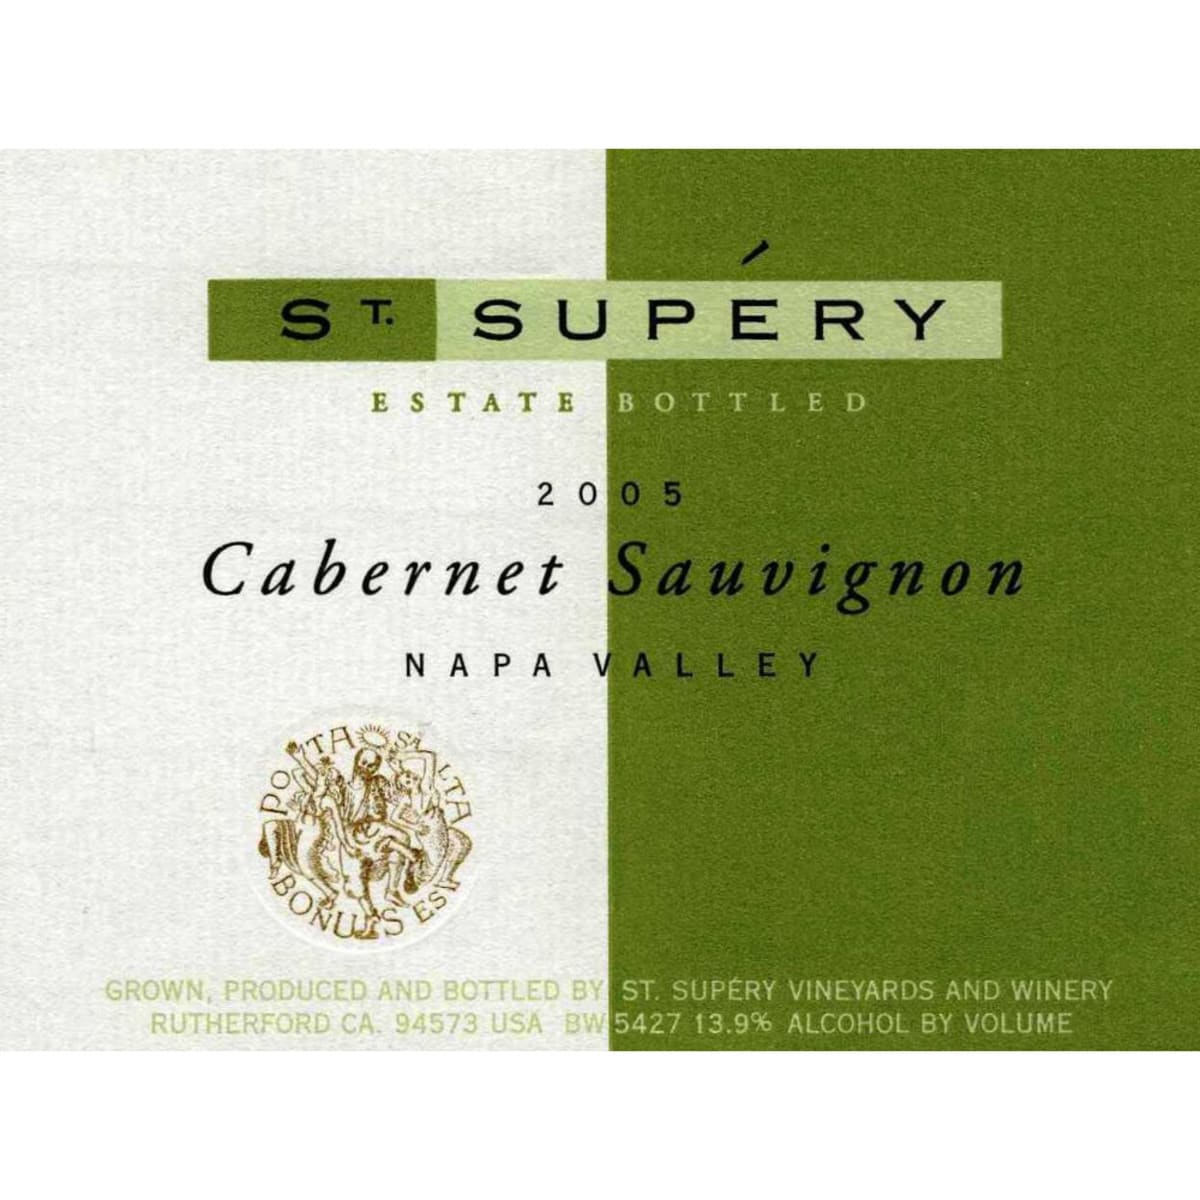 St. Supery Cabernet Sauvignon 2005 Front Label